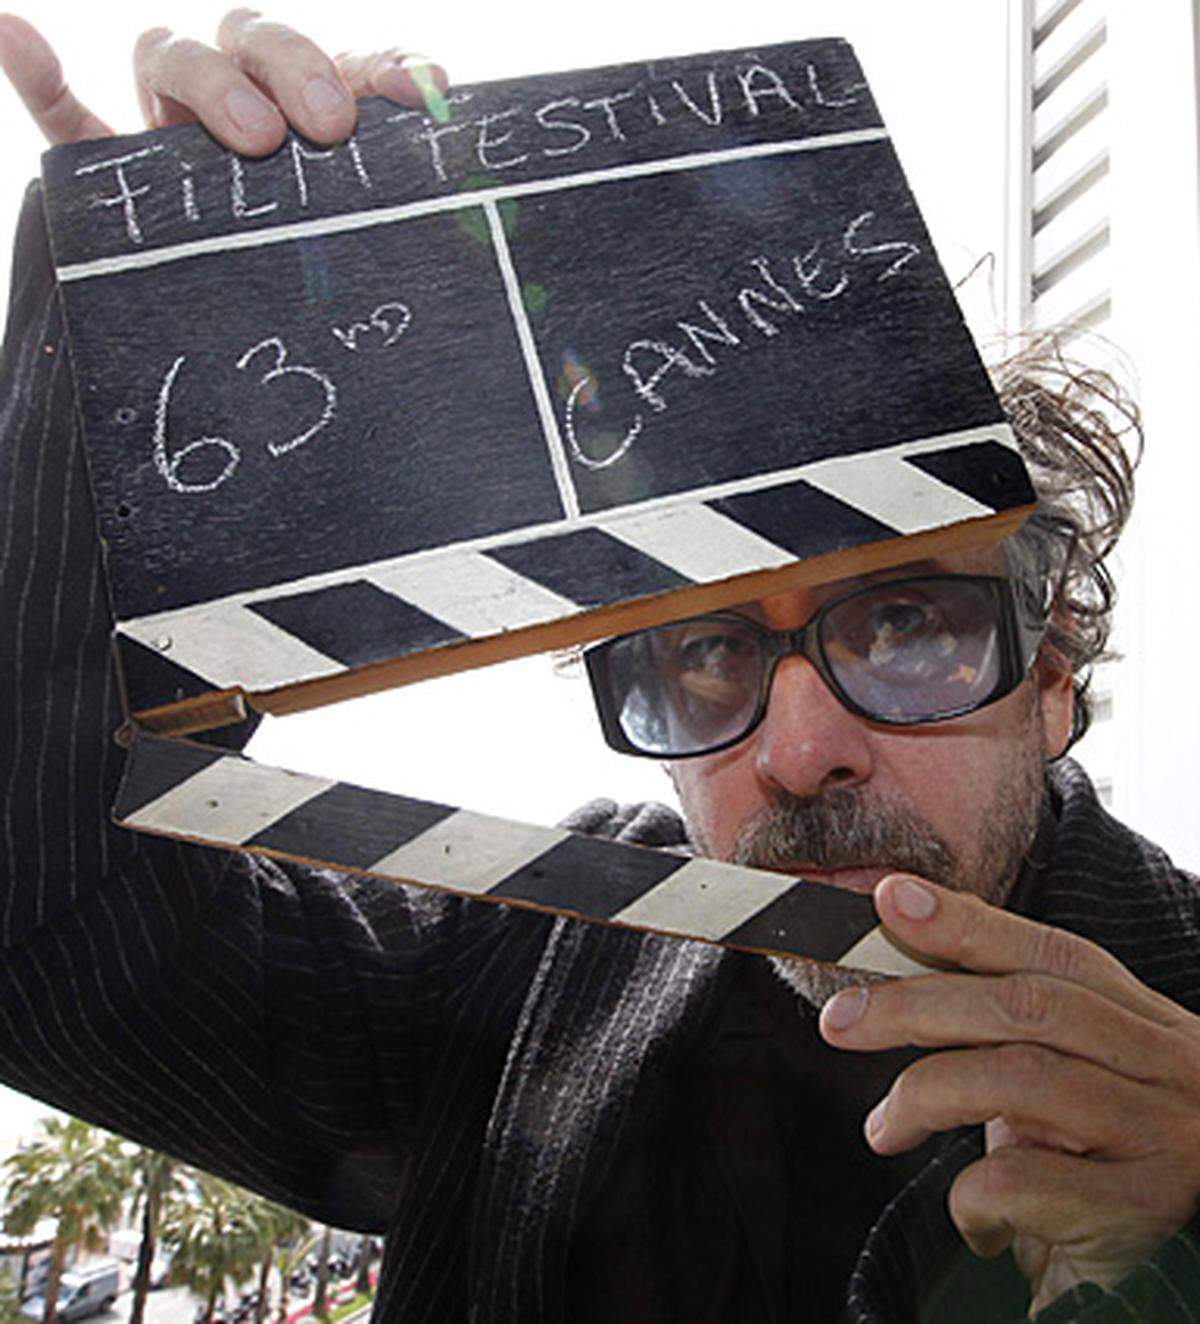 Jury-Präsident der diesjährigen Filmfestspiele ist Tim Burton. "Wir sind in keinster Weise voreingenommen", sagte er kurz vor der Eröffnung. "Es gibt nichts, wonach wir speziell suchen", auch nicht nach politischen Themen, so der Regisseur. "Wir wollen Filme, die uns berühren."